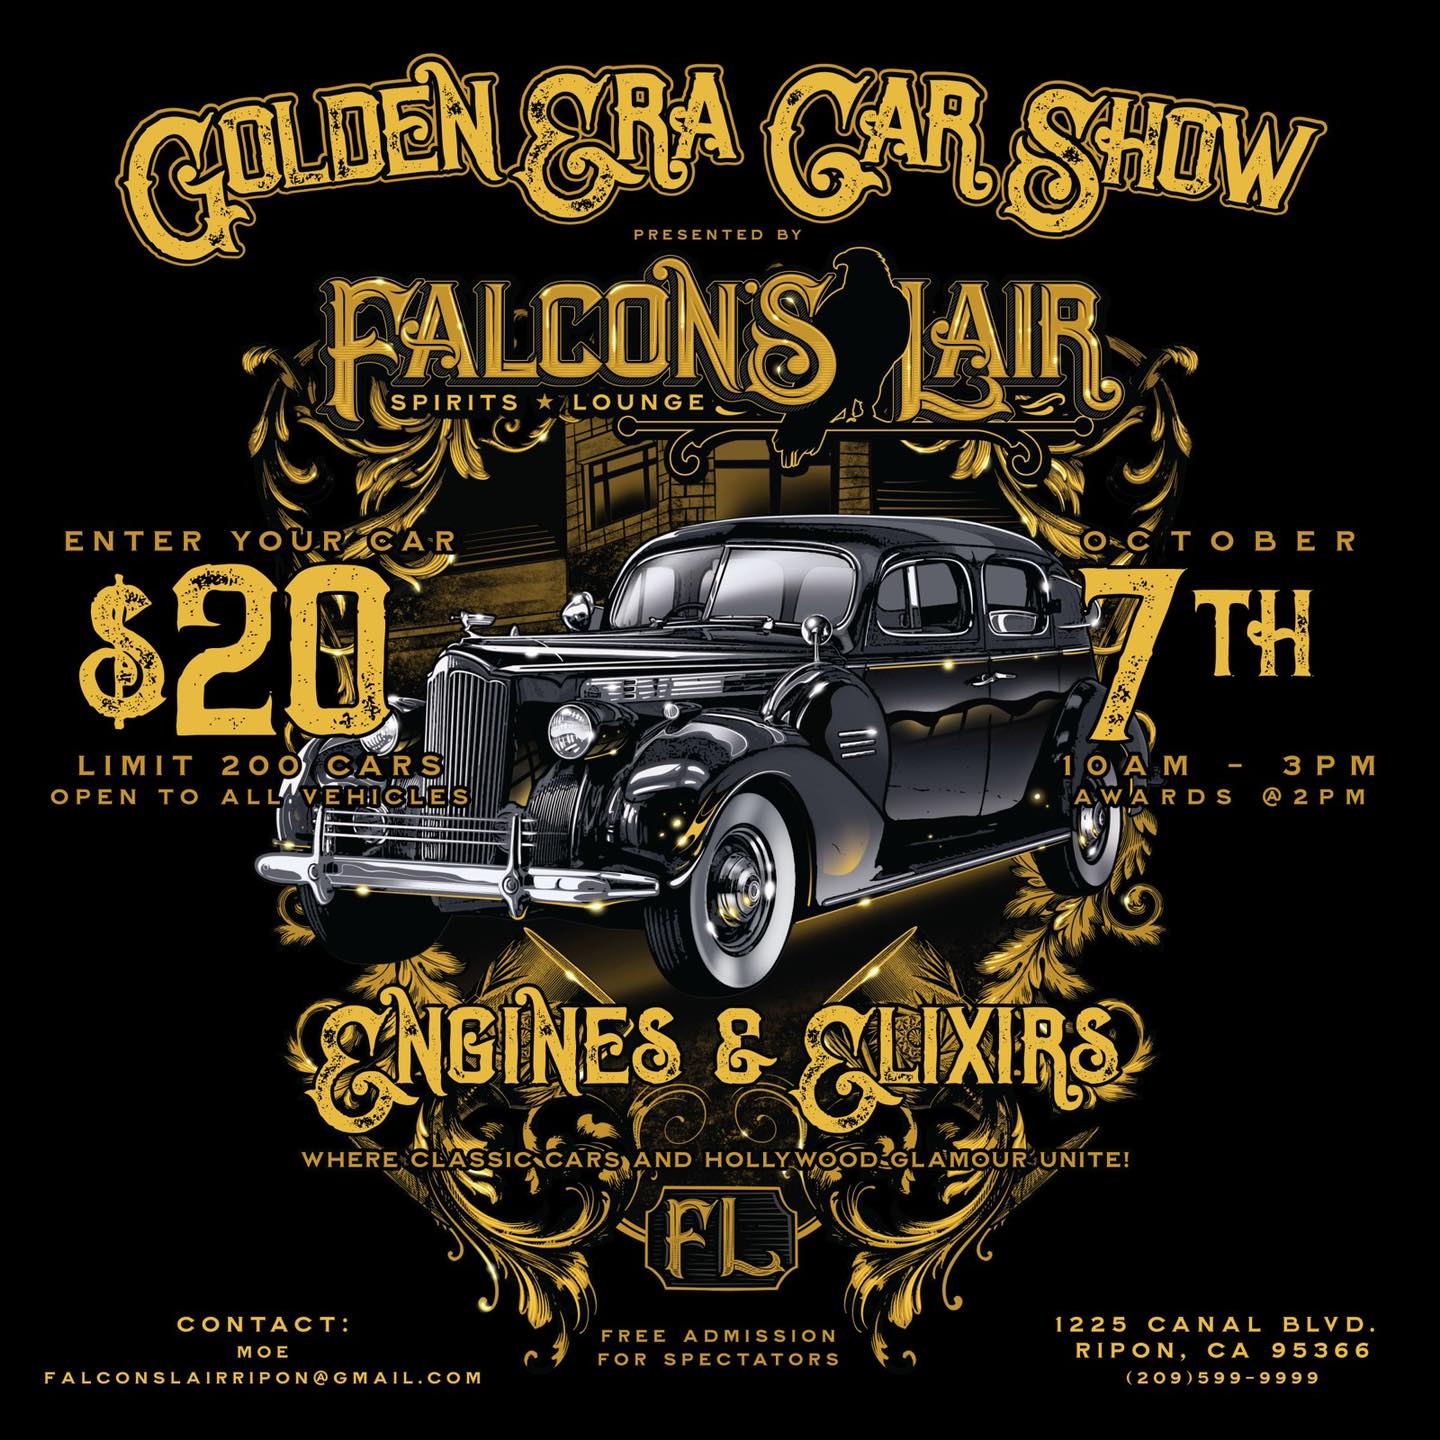 Golden Era Car Show